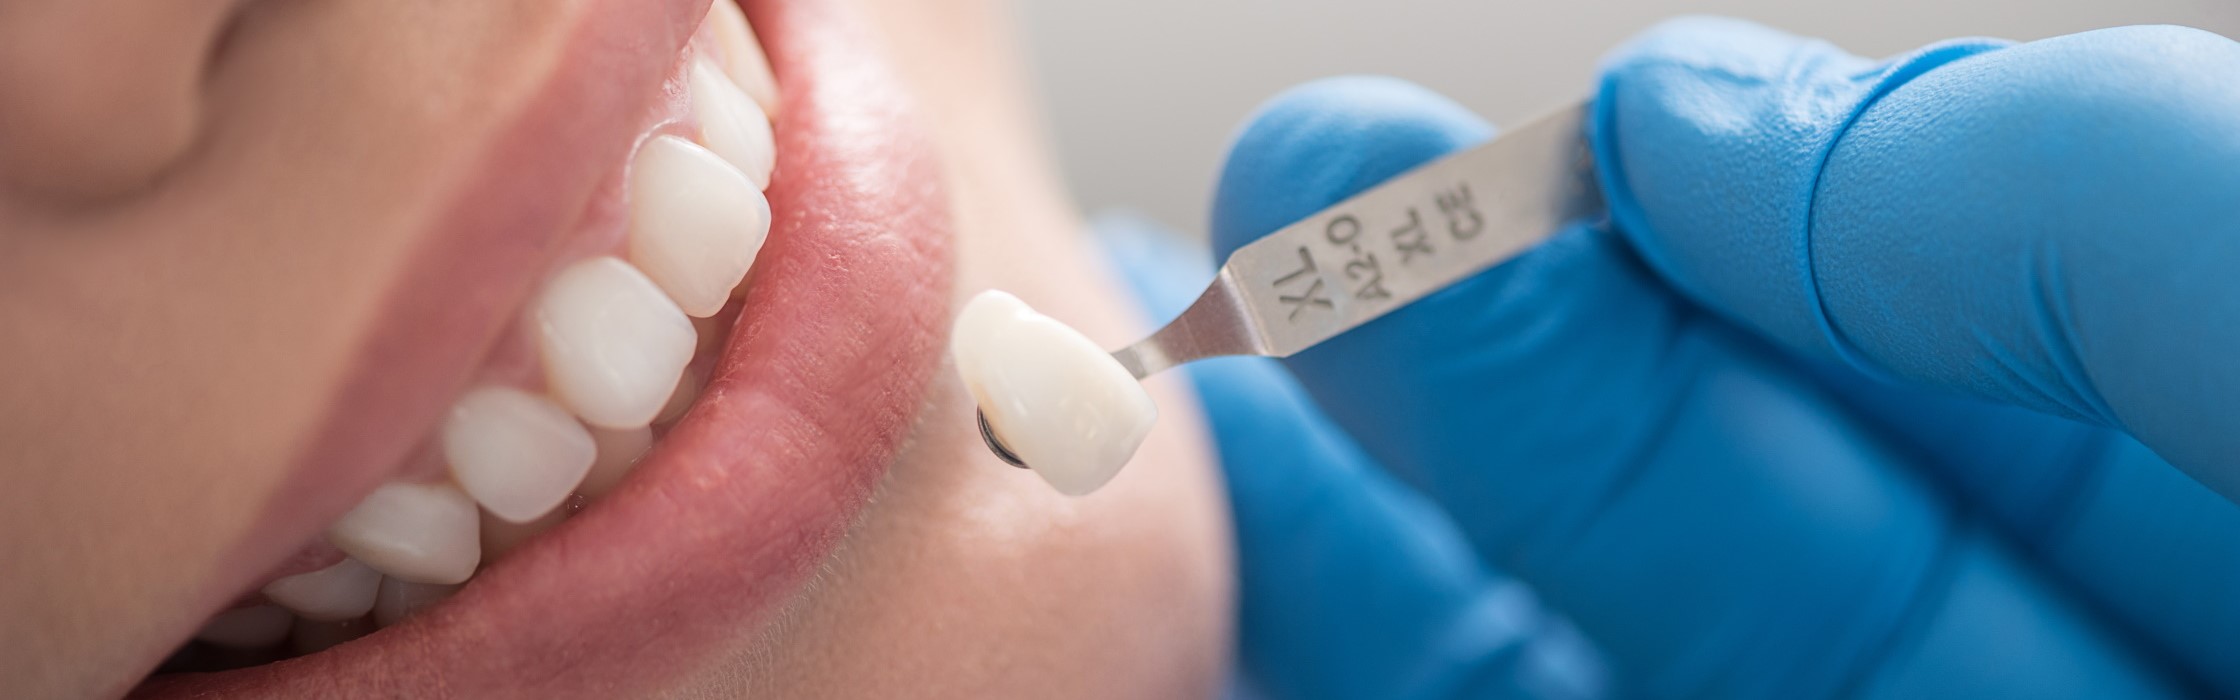 Zahnkronen – Zahnersatz bei Ihrem Zahnarzt